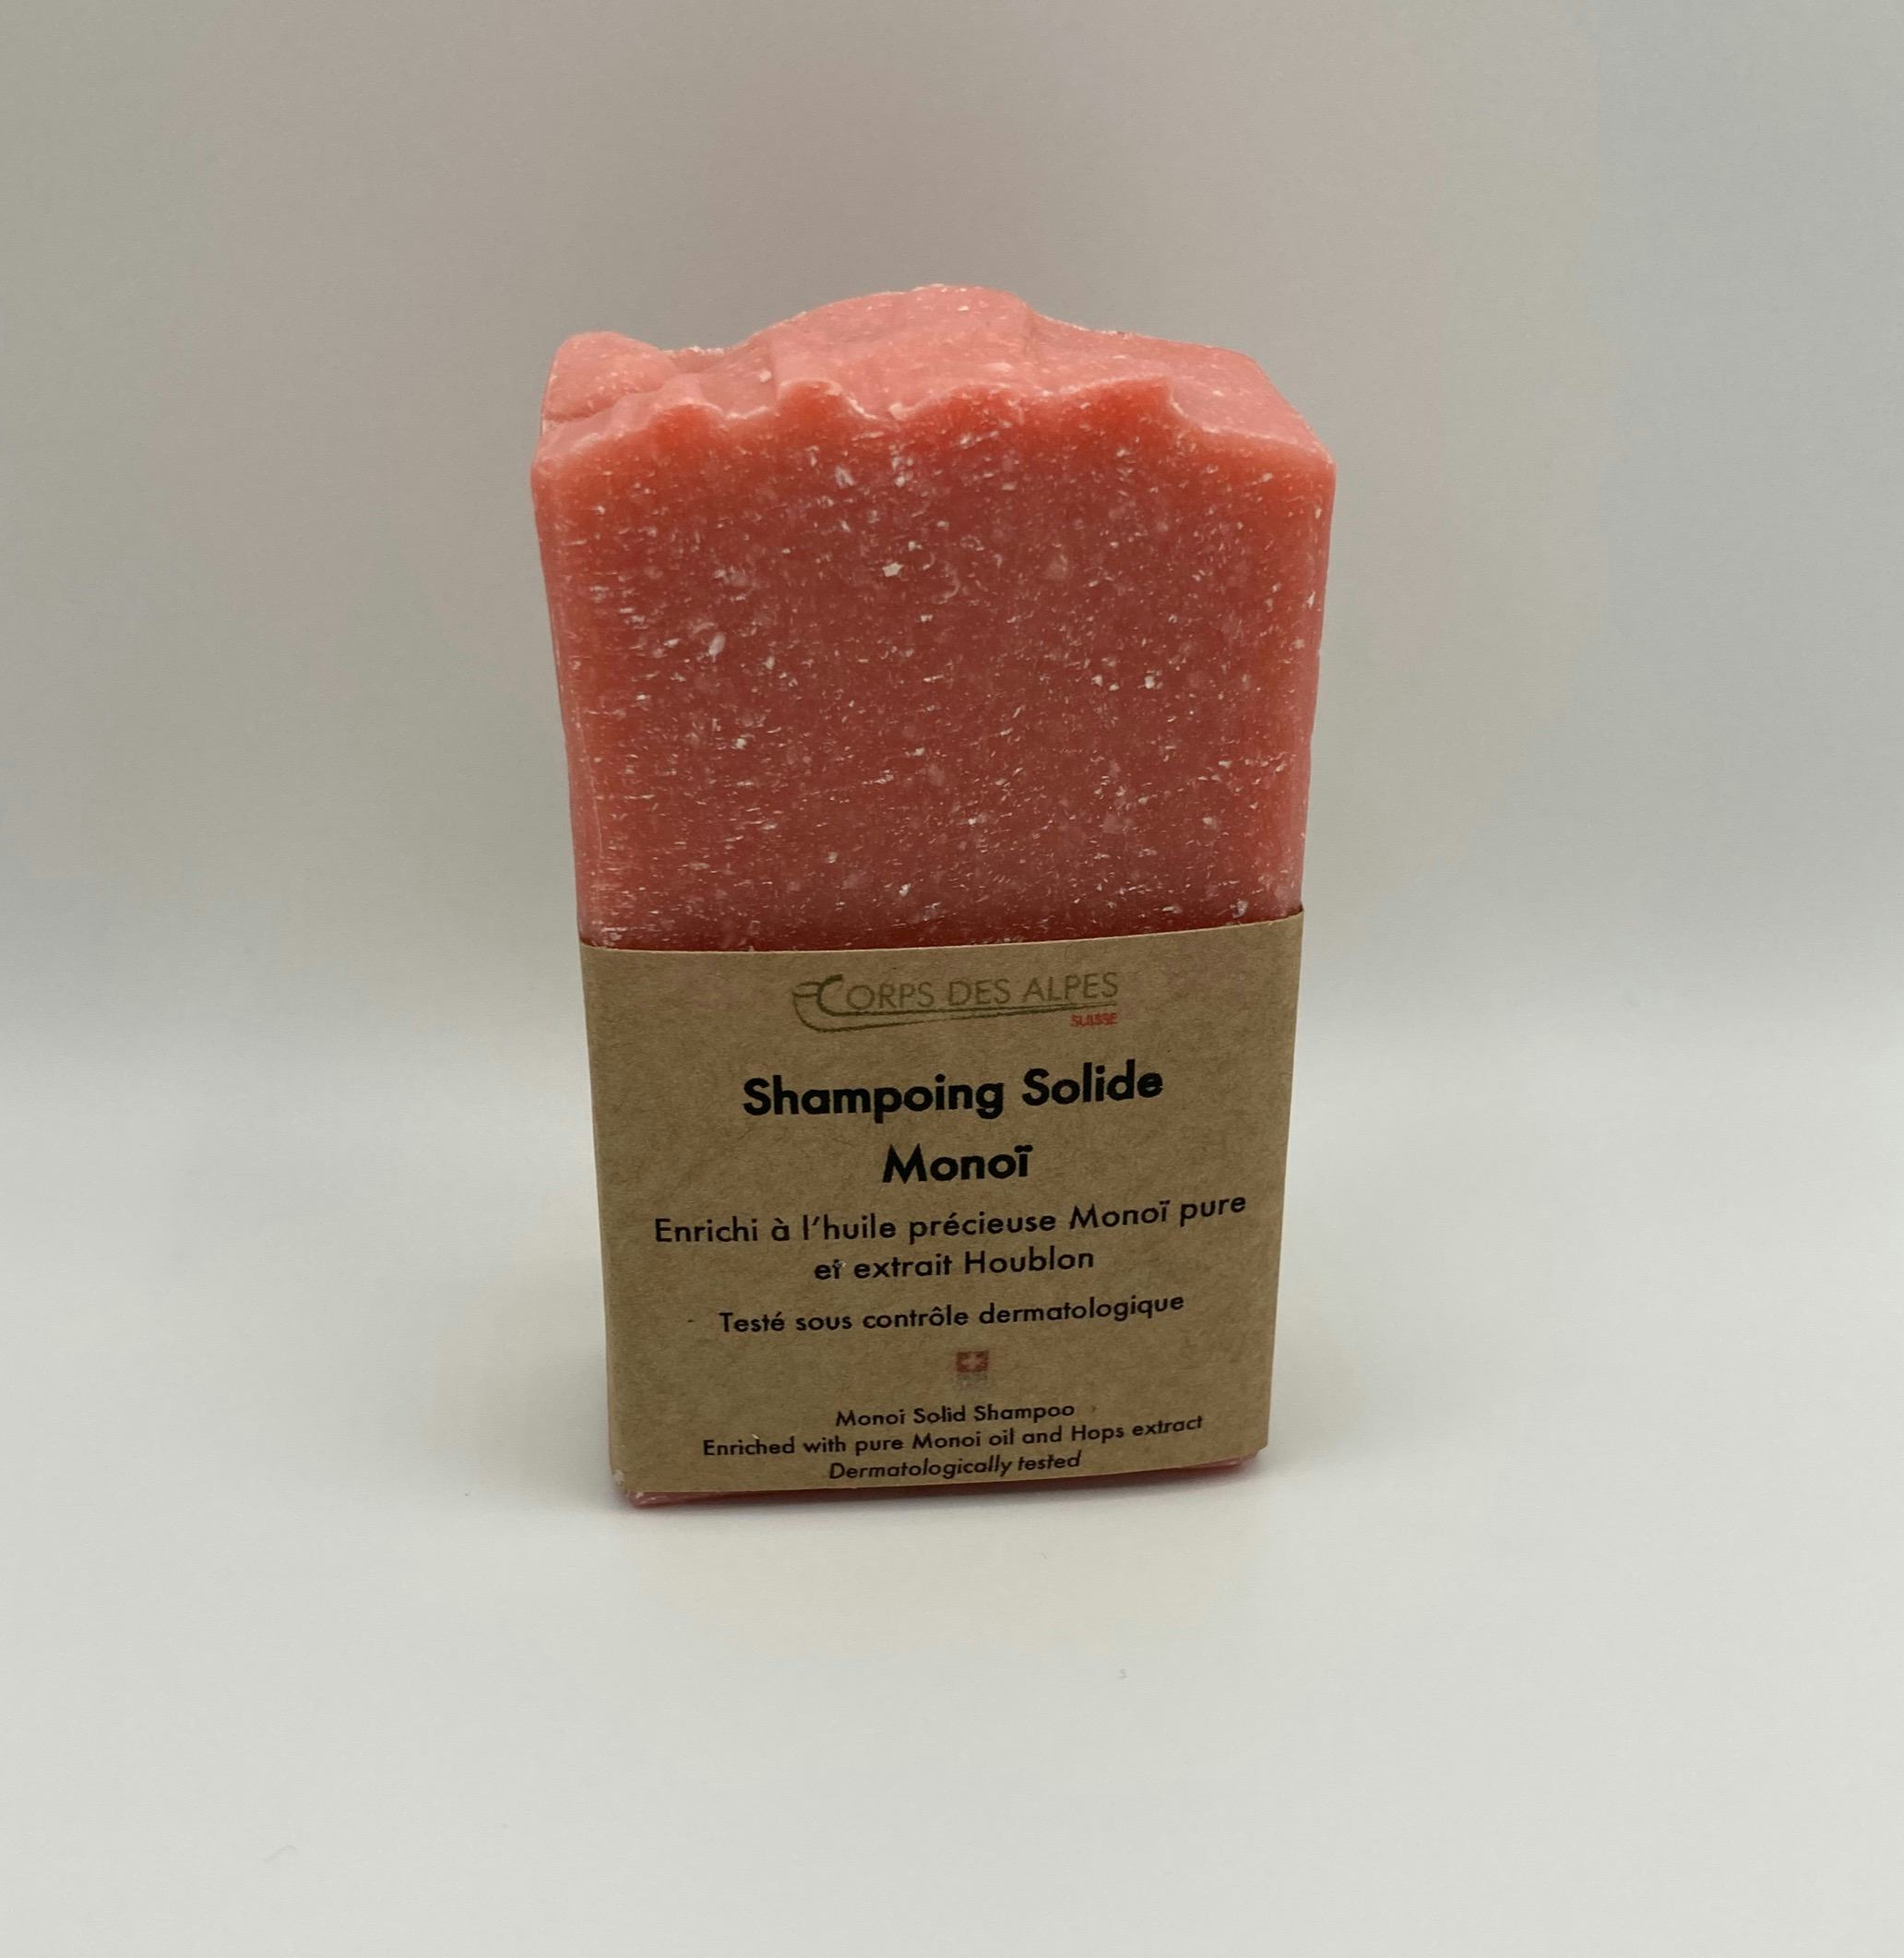 Shampoing solide Monoï, prodotto artigianale per la vendita diretta in Svizzera